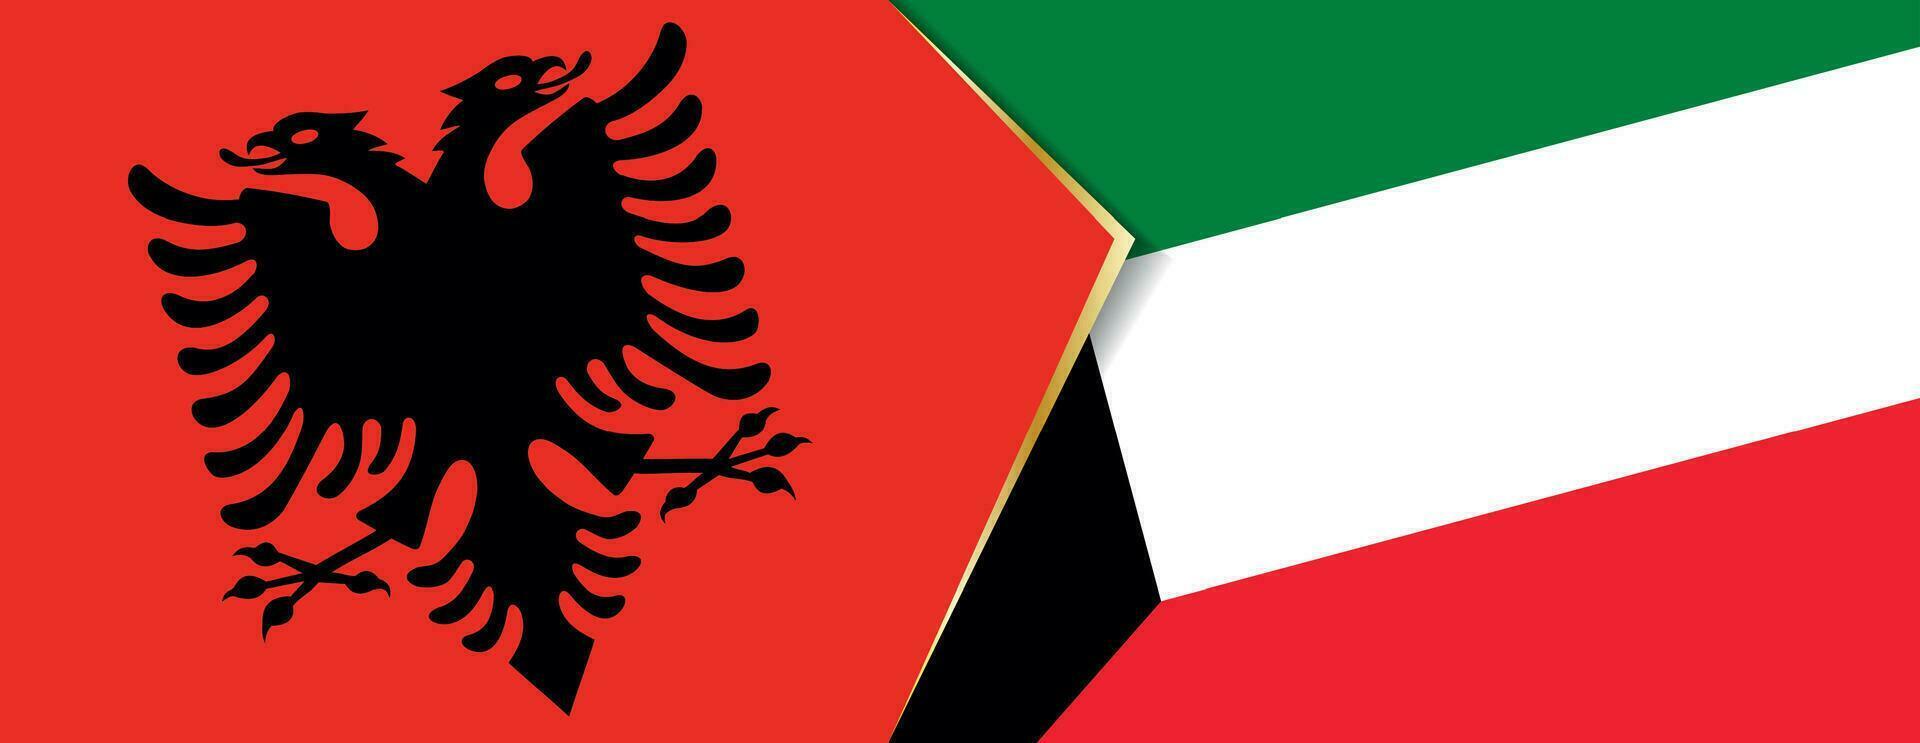 Albania e Kuwait bandiere, Due vettore bandiere.